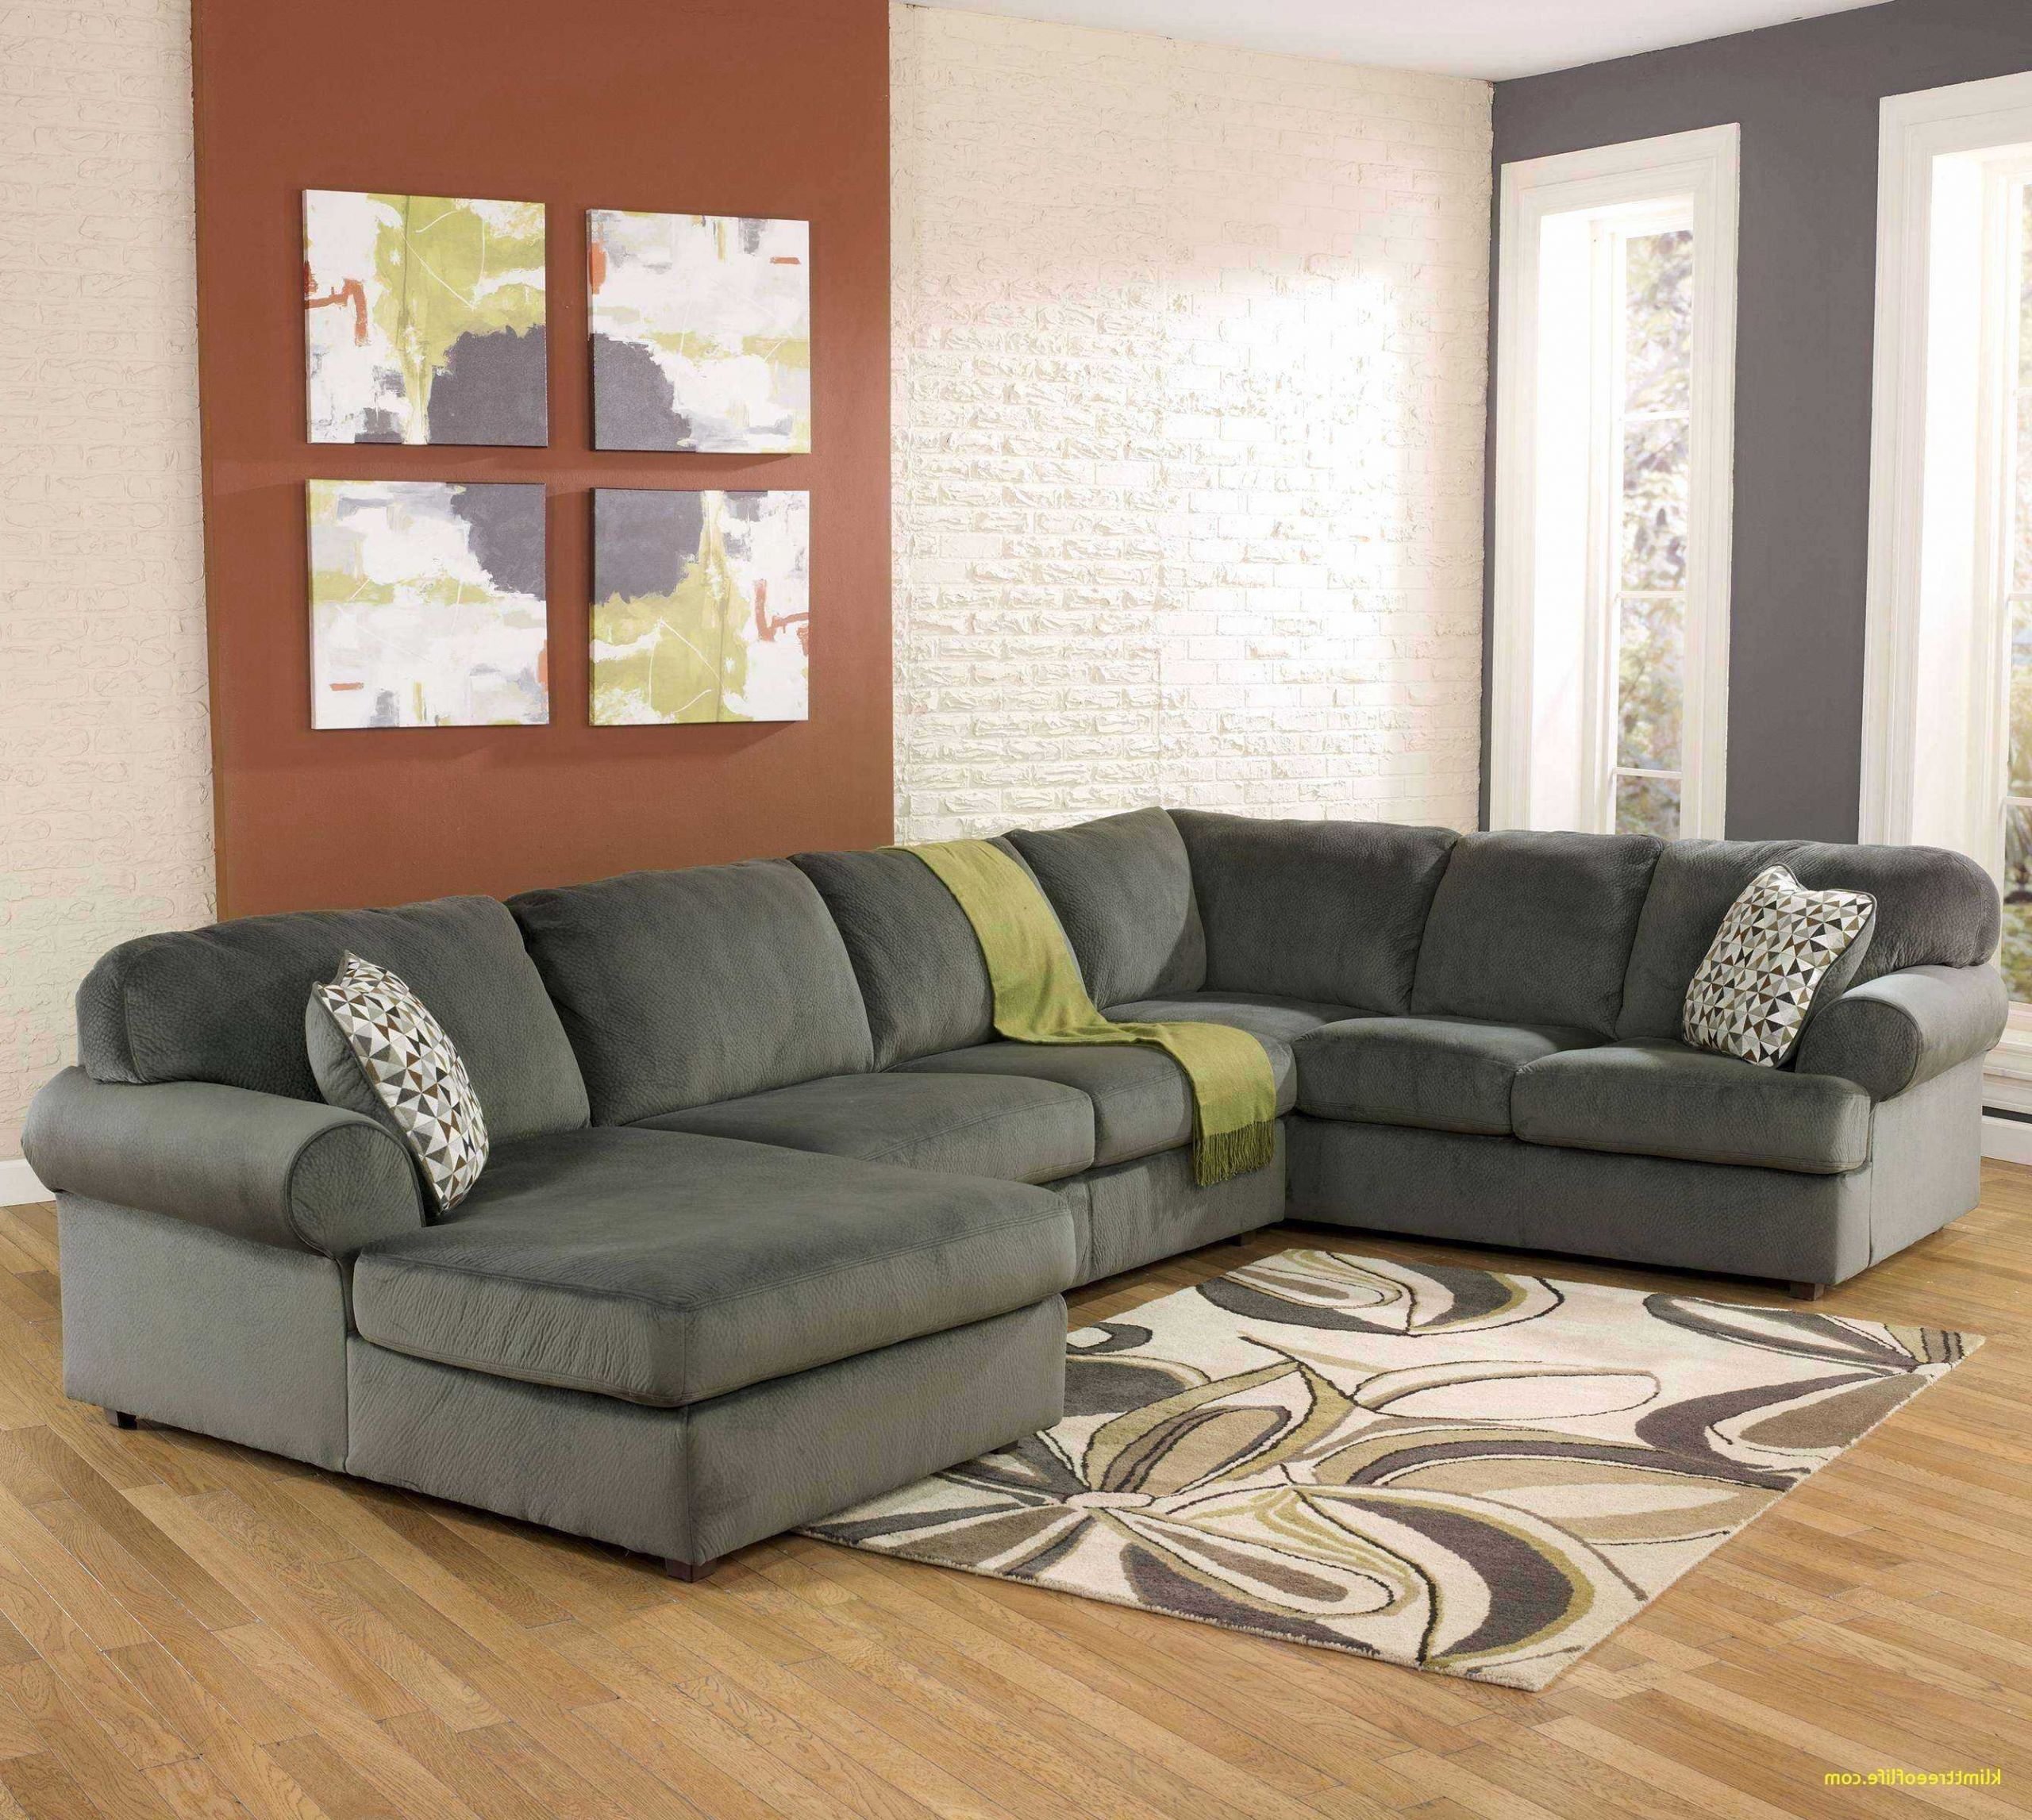 40 luxus von sofa klein gunstig ideen csbkcmom of big sofa gunstig